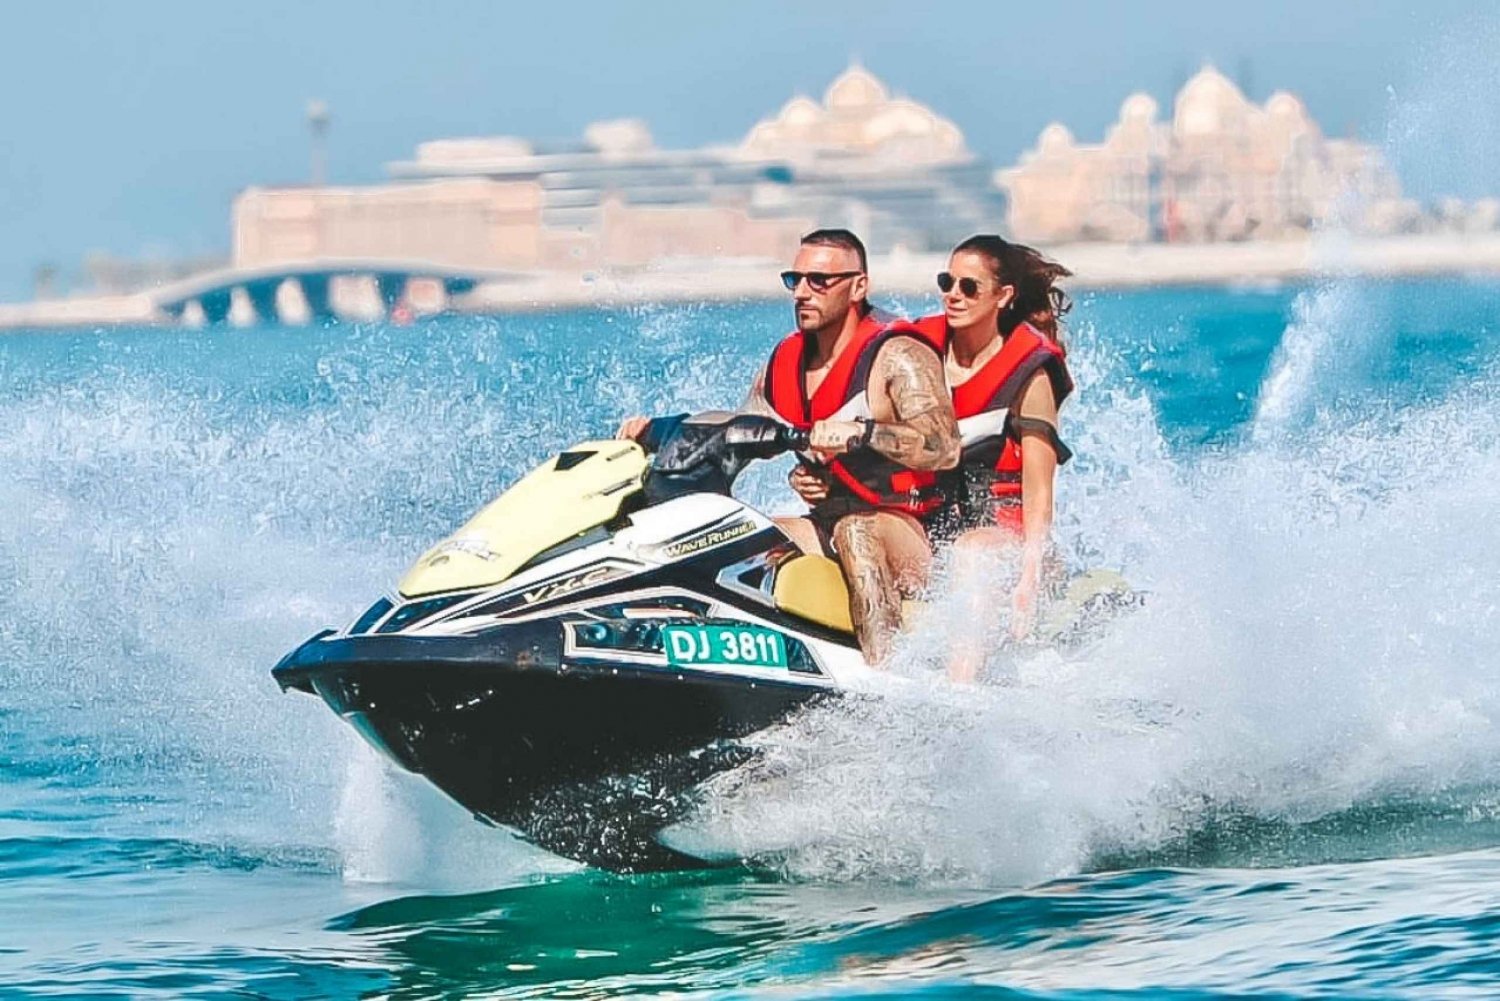 Dubaï : Location de jet ski sur la plage de Jumeirah pour 2 personnes maximum